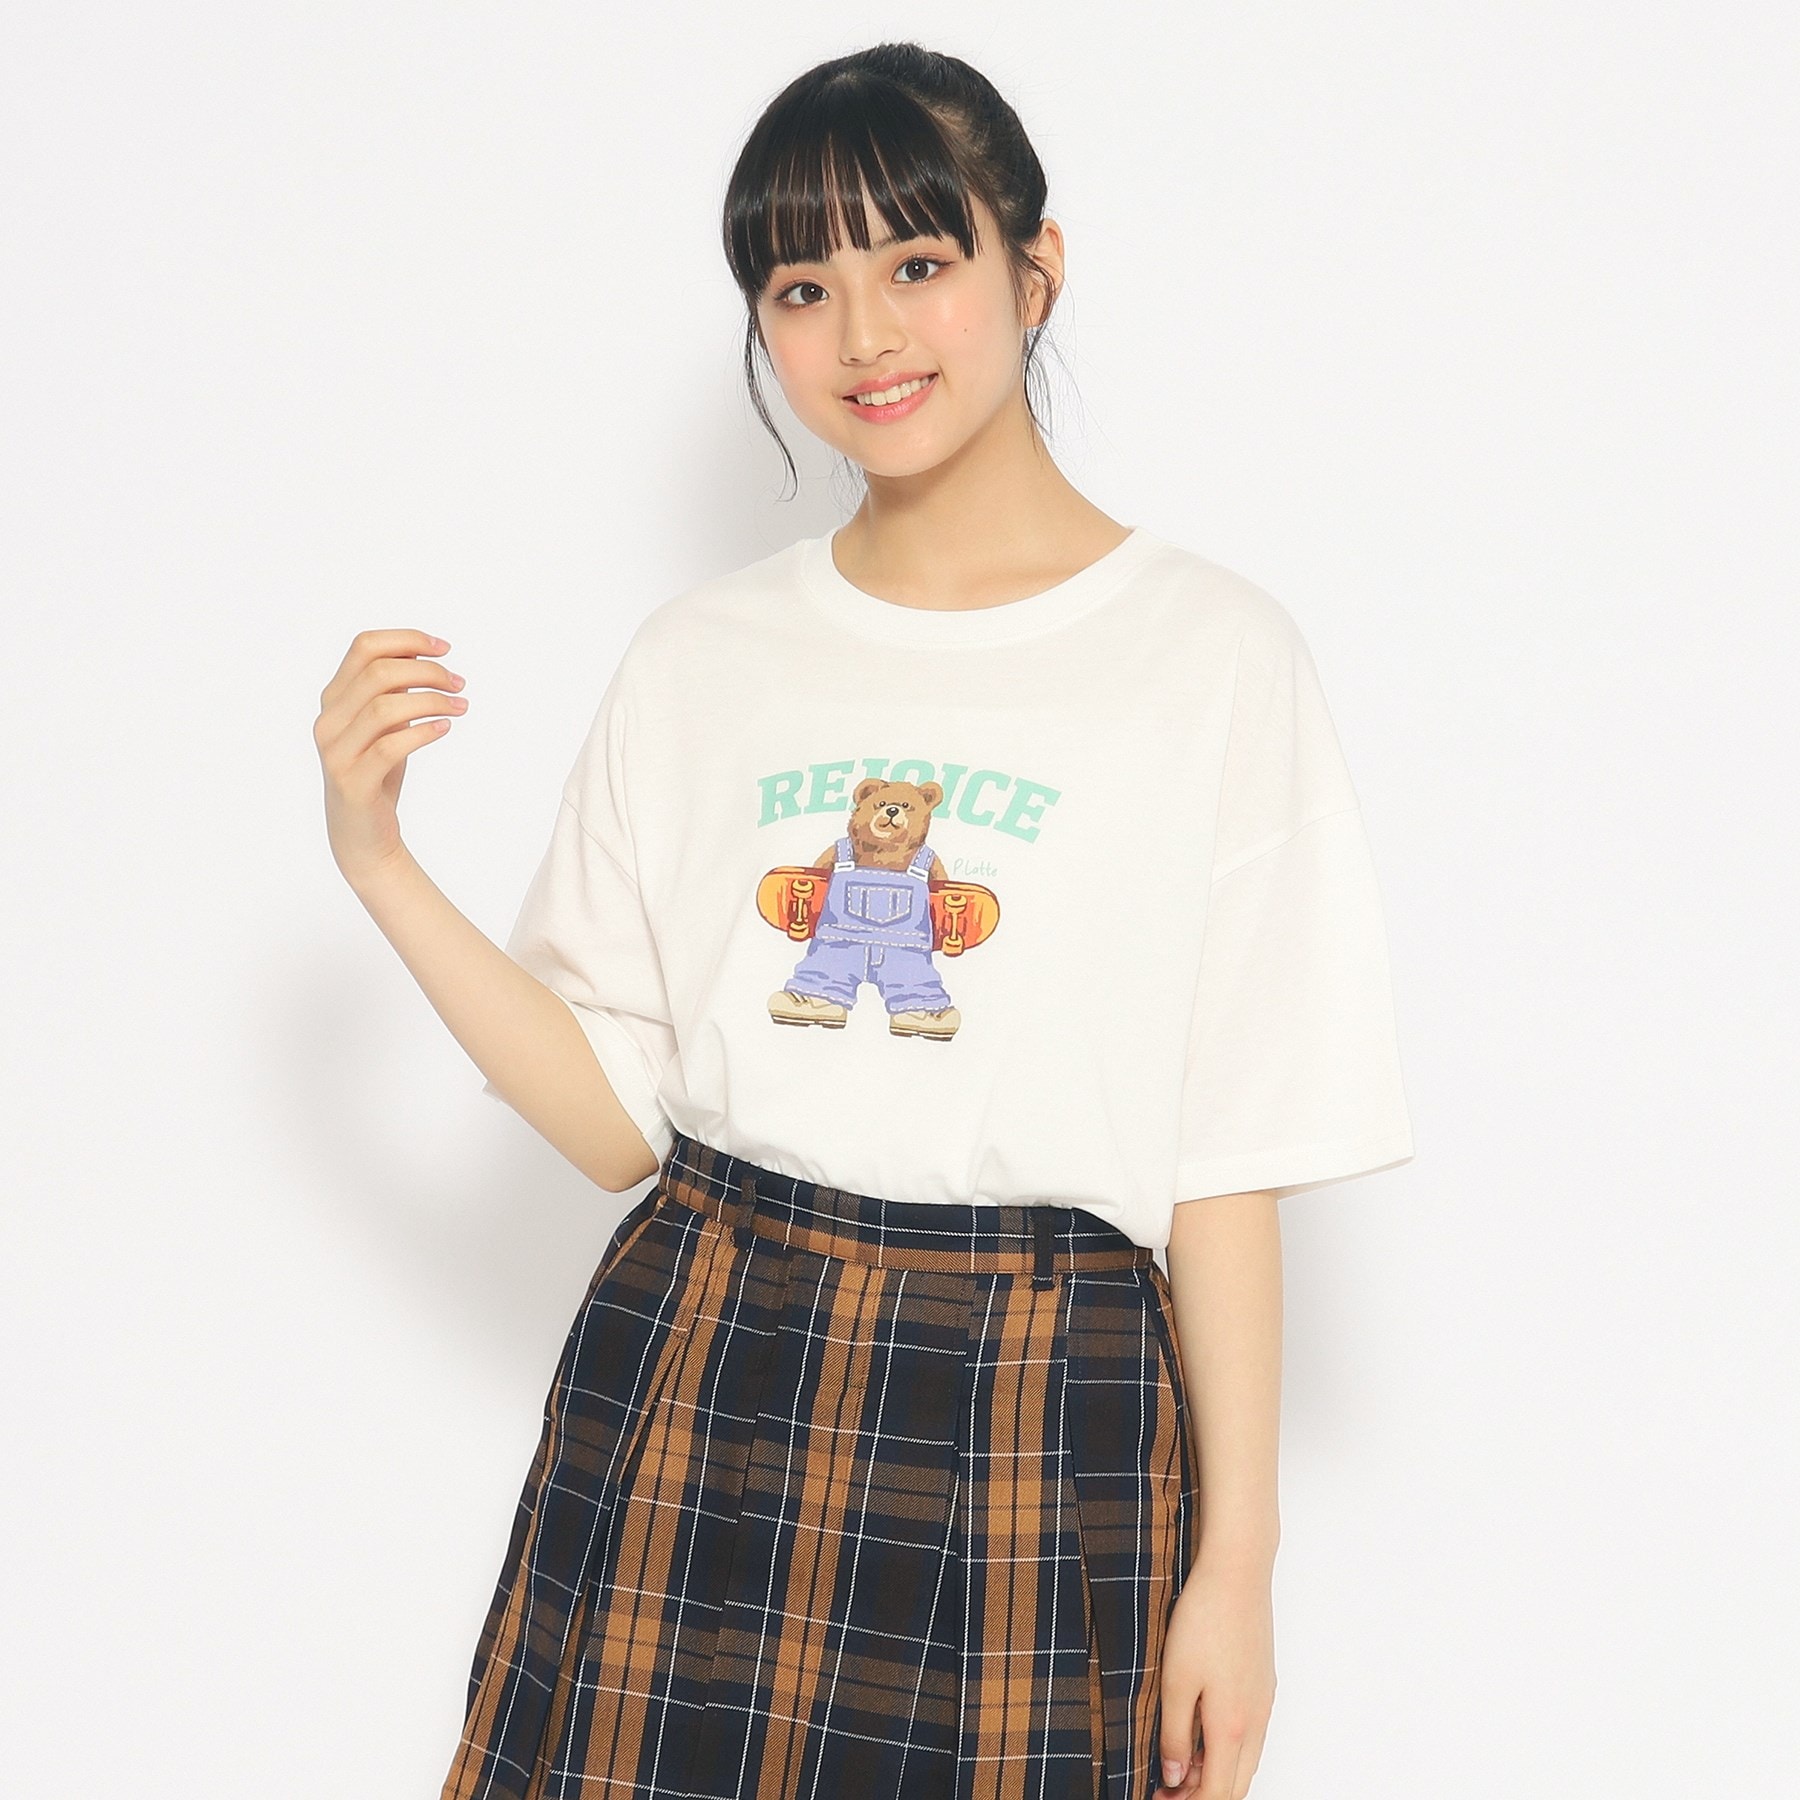 ピンク ラテ(PINK-latte)のスケボークマちゃんプリントTシャツ オフホワイト(003)